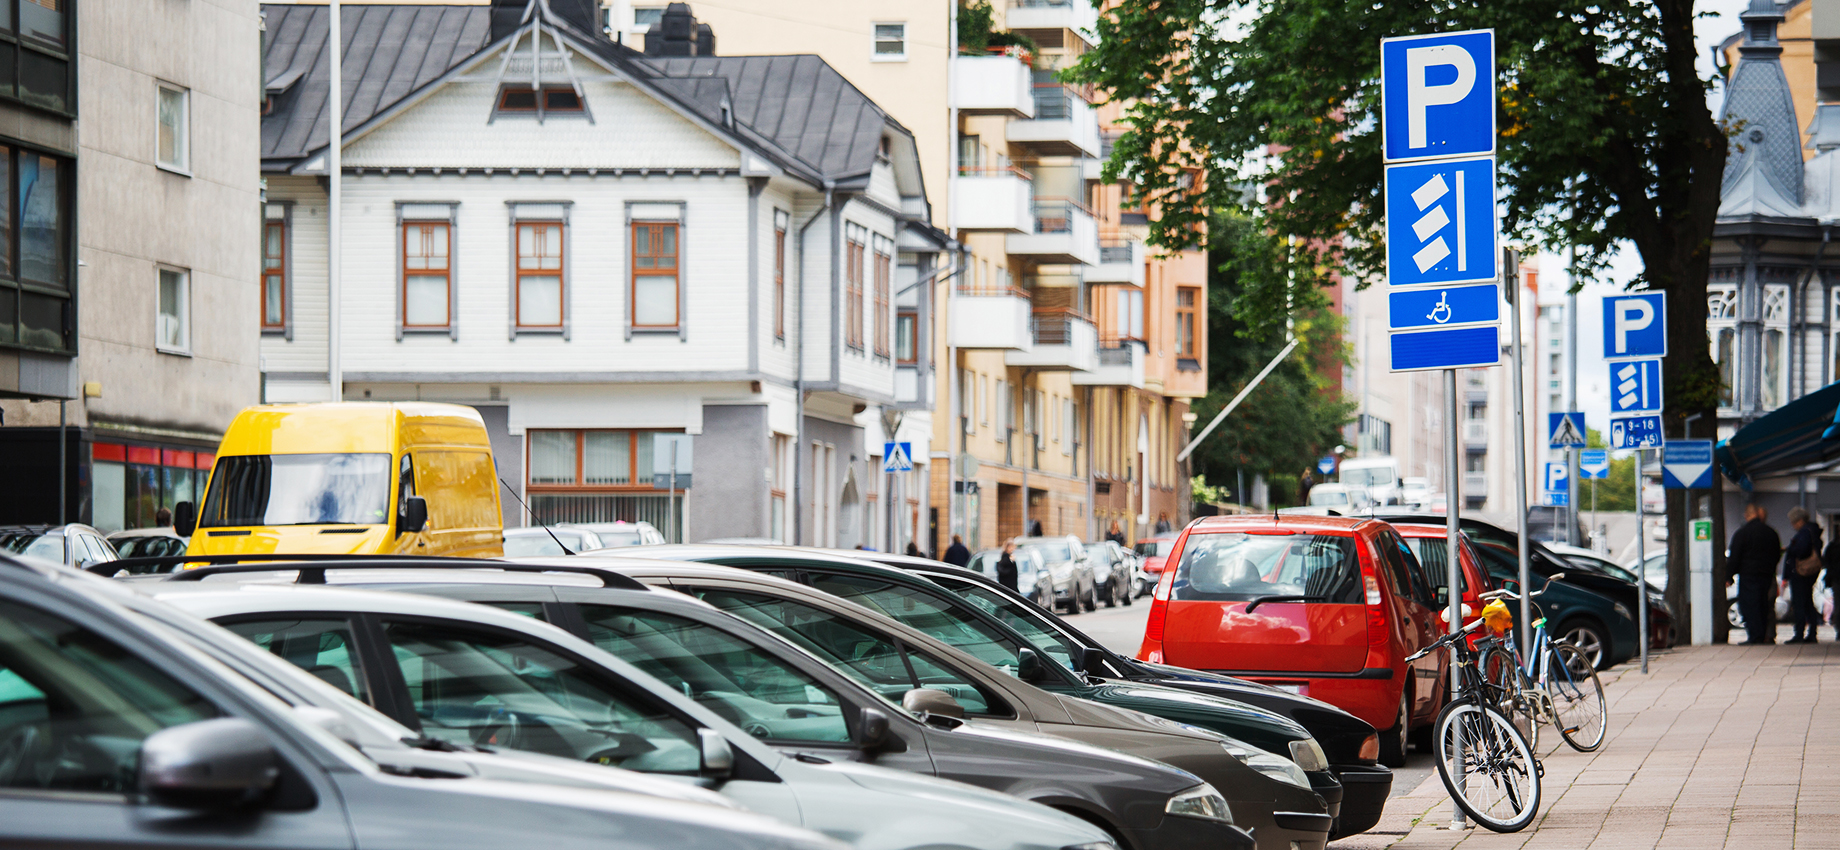 Эстония дала полгода на регистрацию или вывоз автомобилей с российскими номерами